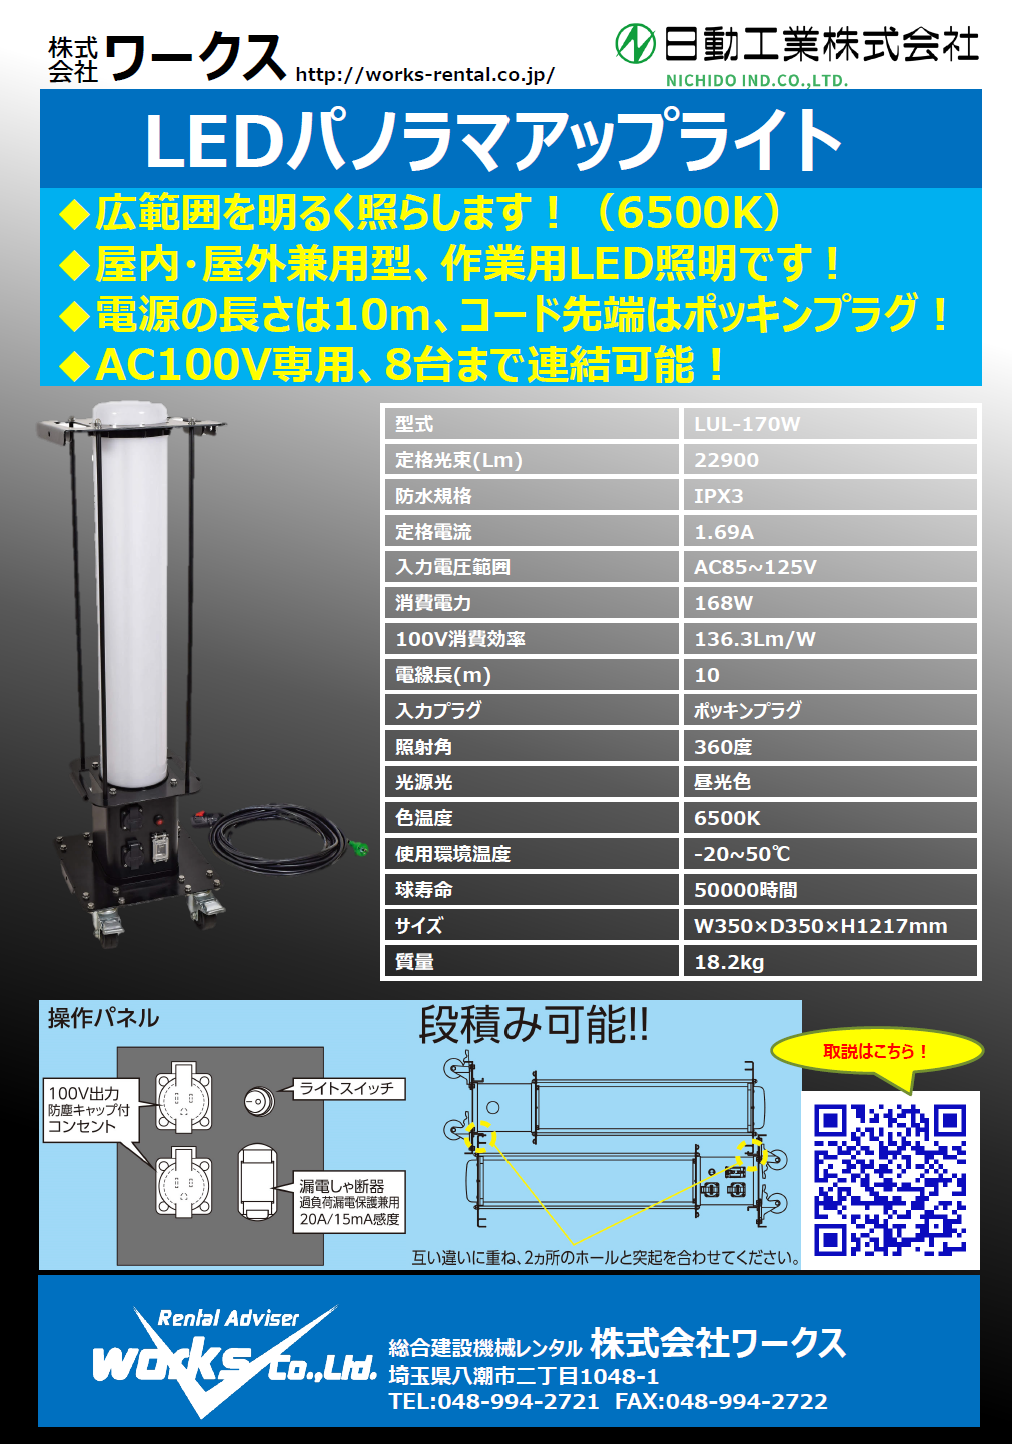 【新商品導入】LEDパノラマアップライト　LUL-170W